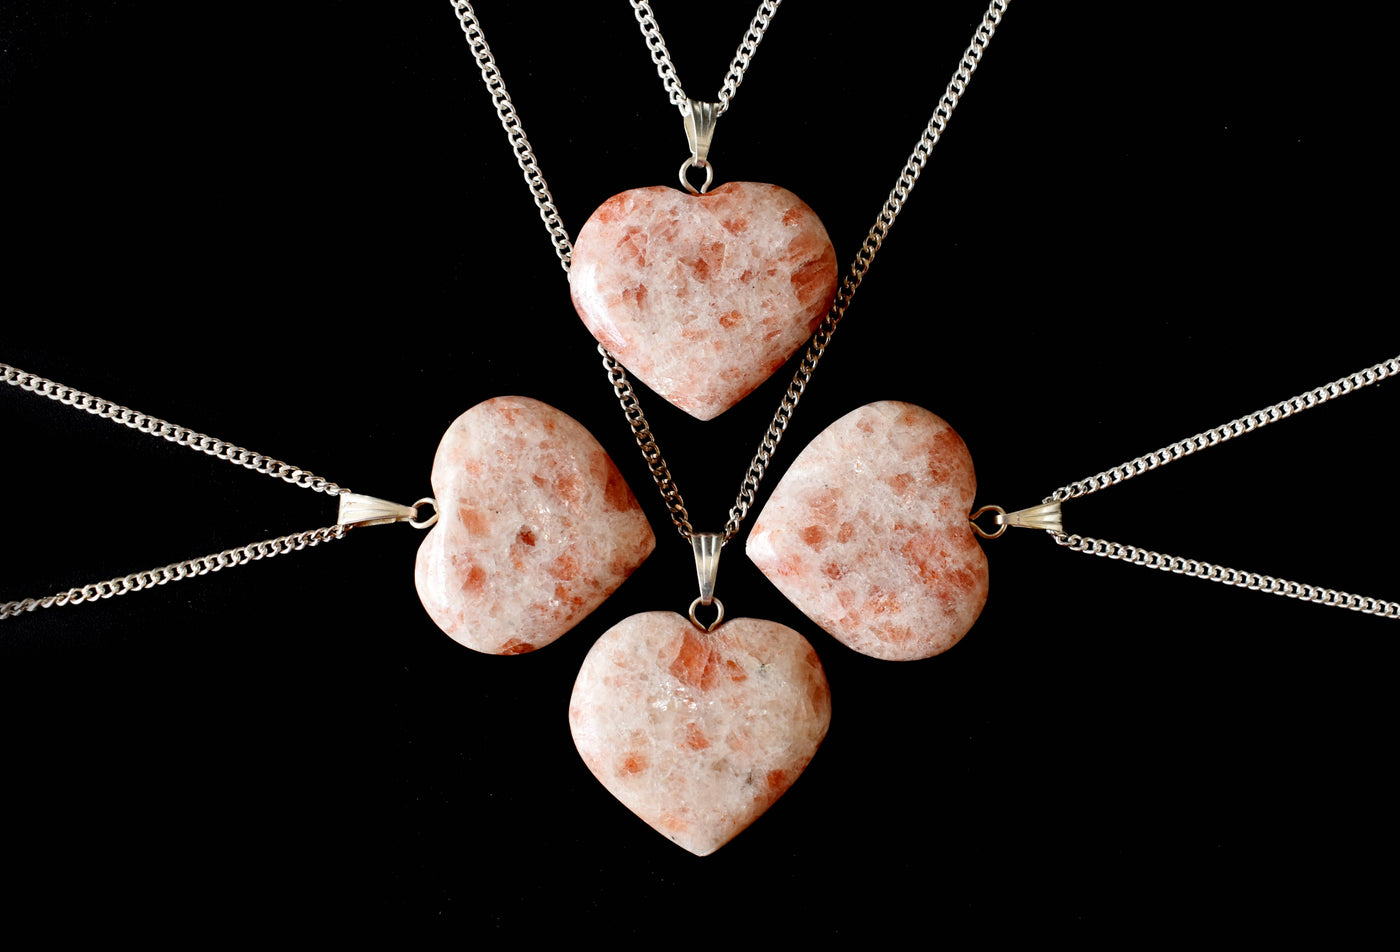 Véritable pendentif cœur en cristal de pierre de soleil, véritables colliers en forme de cœur, breloque en pierre précieuse polie.